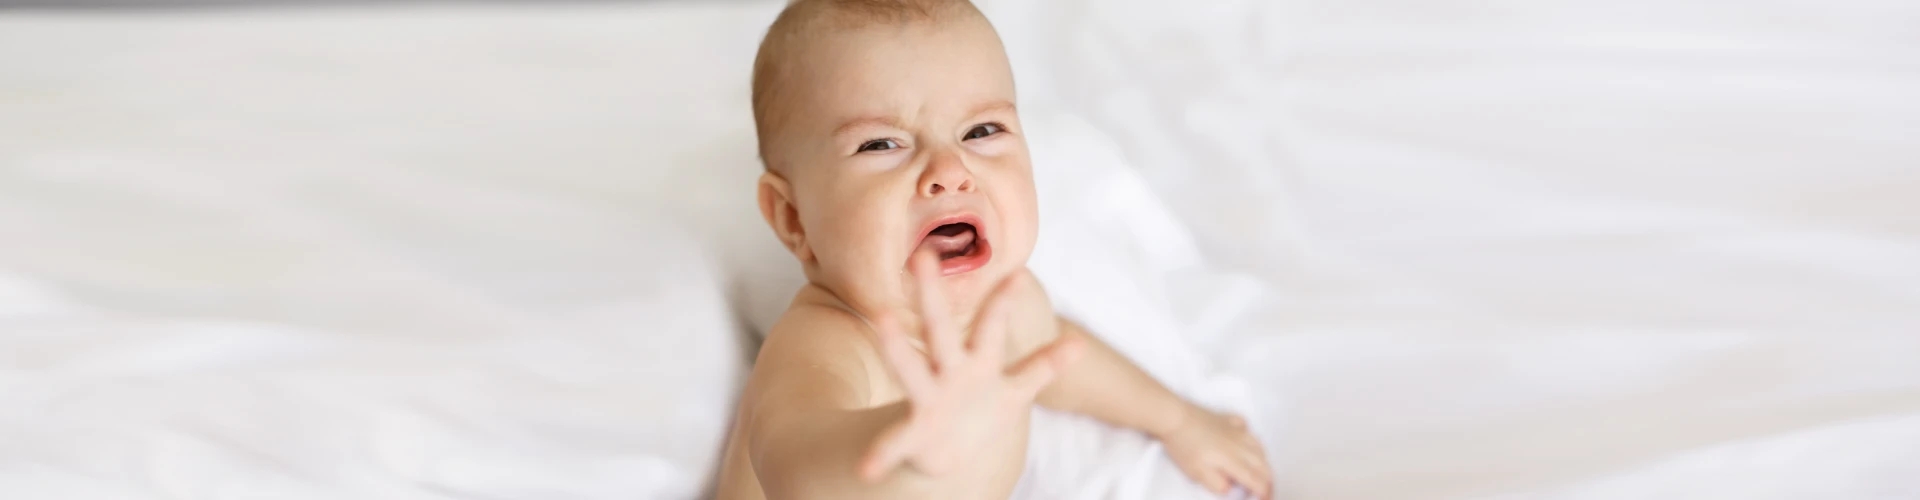 Bebeklerde Alerji Neden Olur?